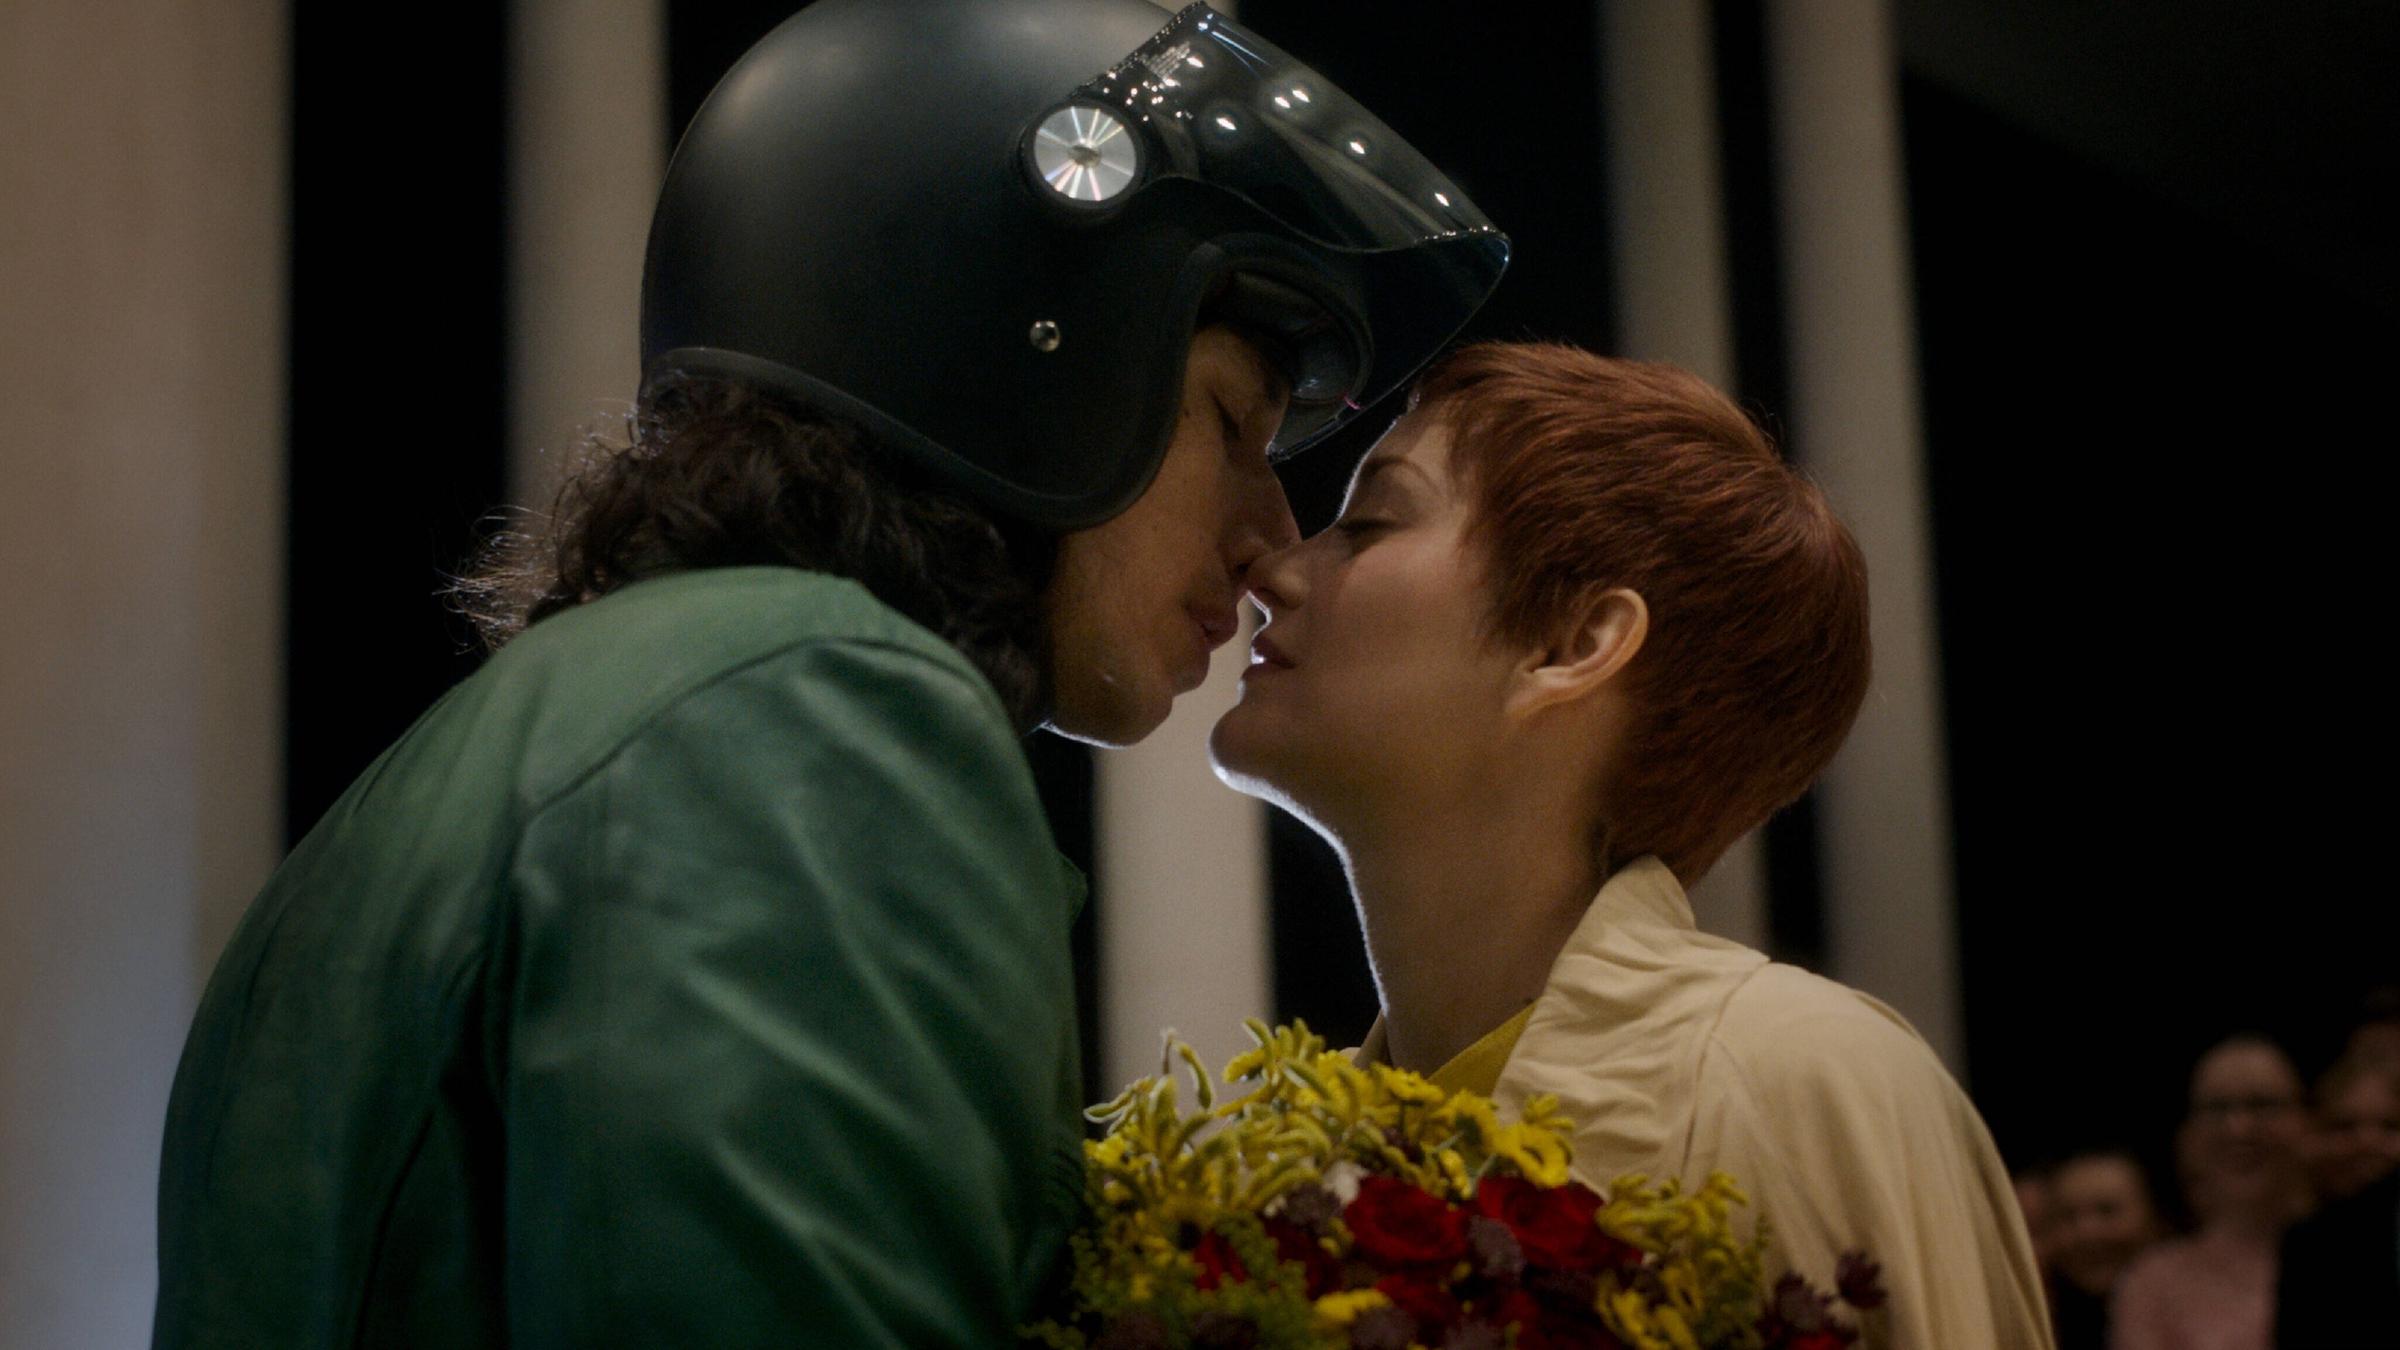 Ein Mann mit Motorradhelm küsst eine Frau, die einen Blumenstrauß hält....</p>

                        <a href=